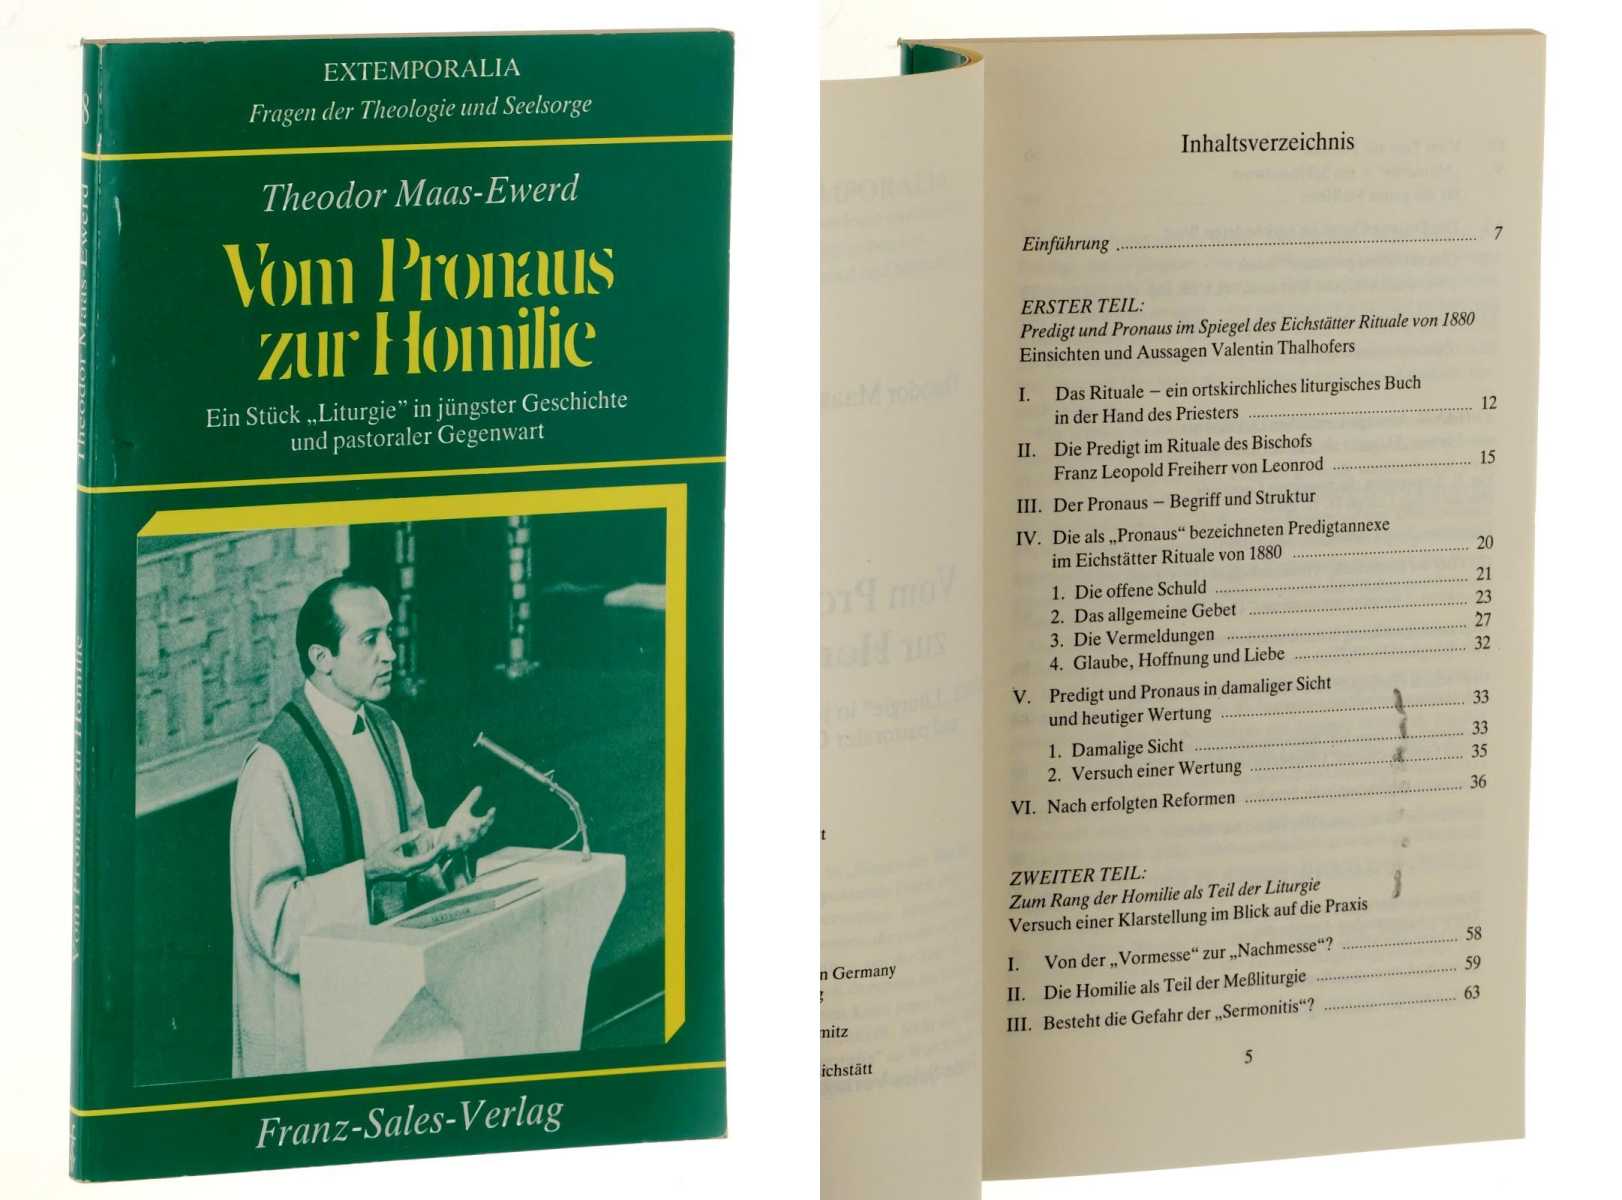 Maas-Ewerd, Theodor:  Vom Pronaus zur Homilie. Ein Stück "Liturgie" in jüngster Geschichte und pastoraler Gegenwart. 